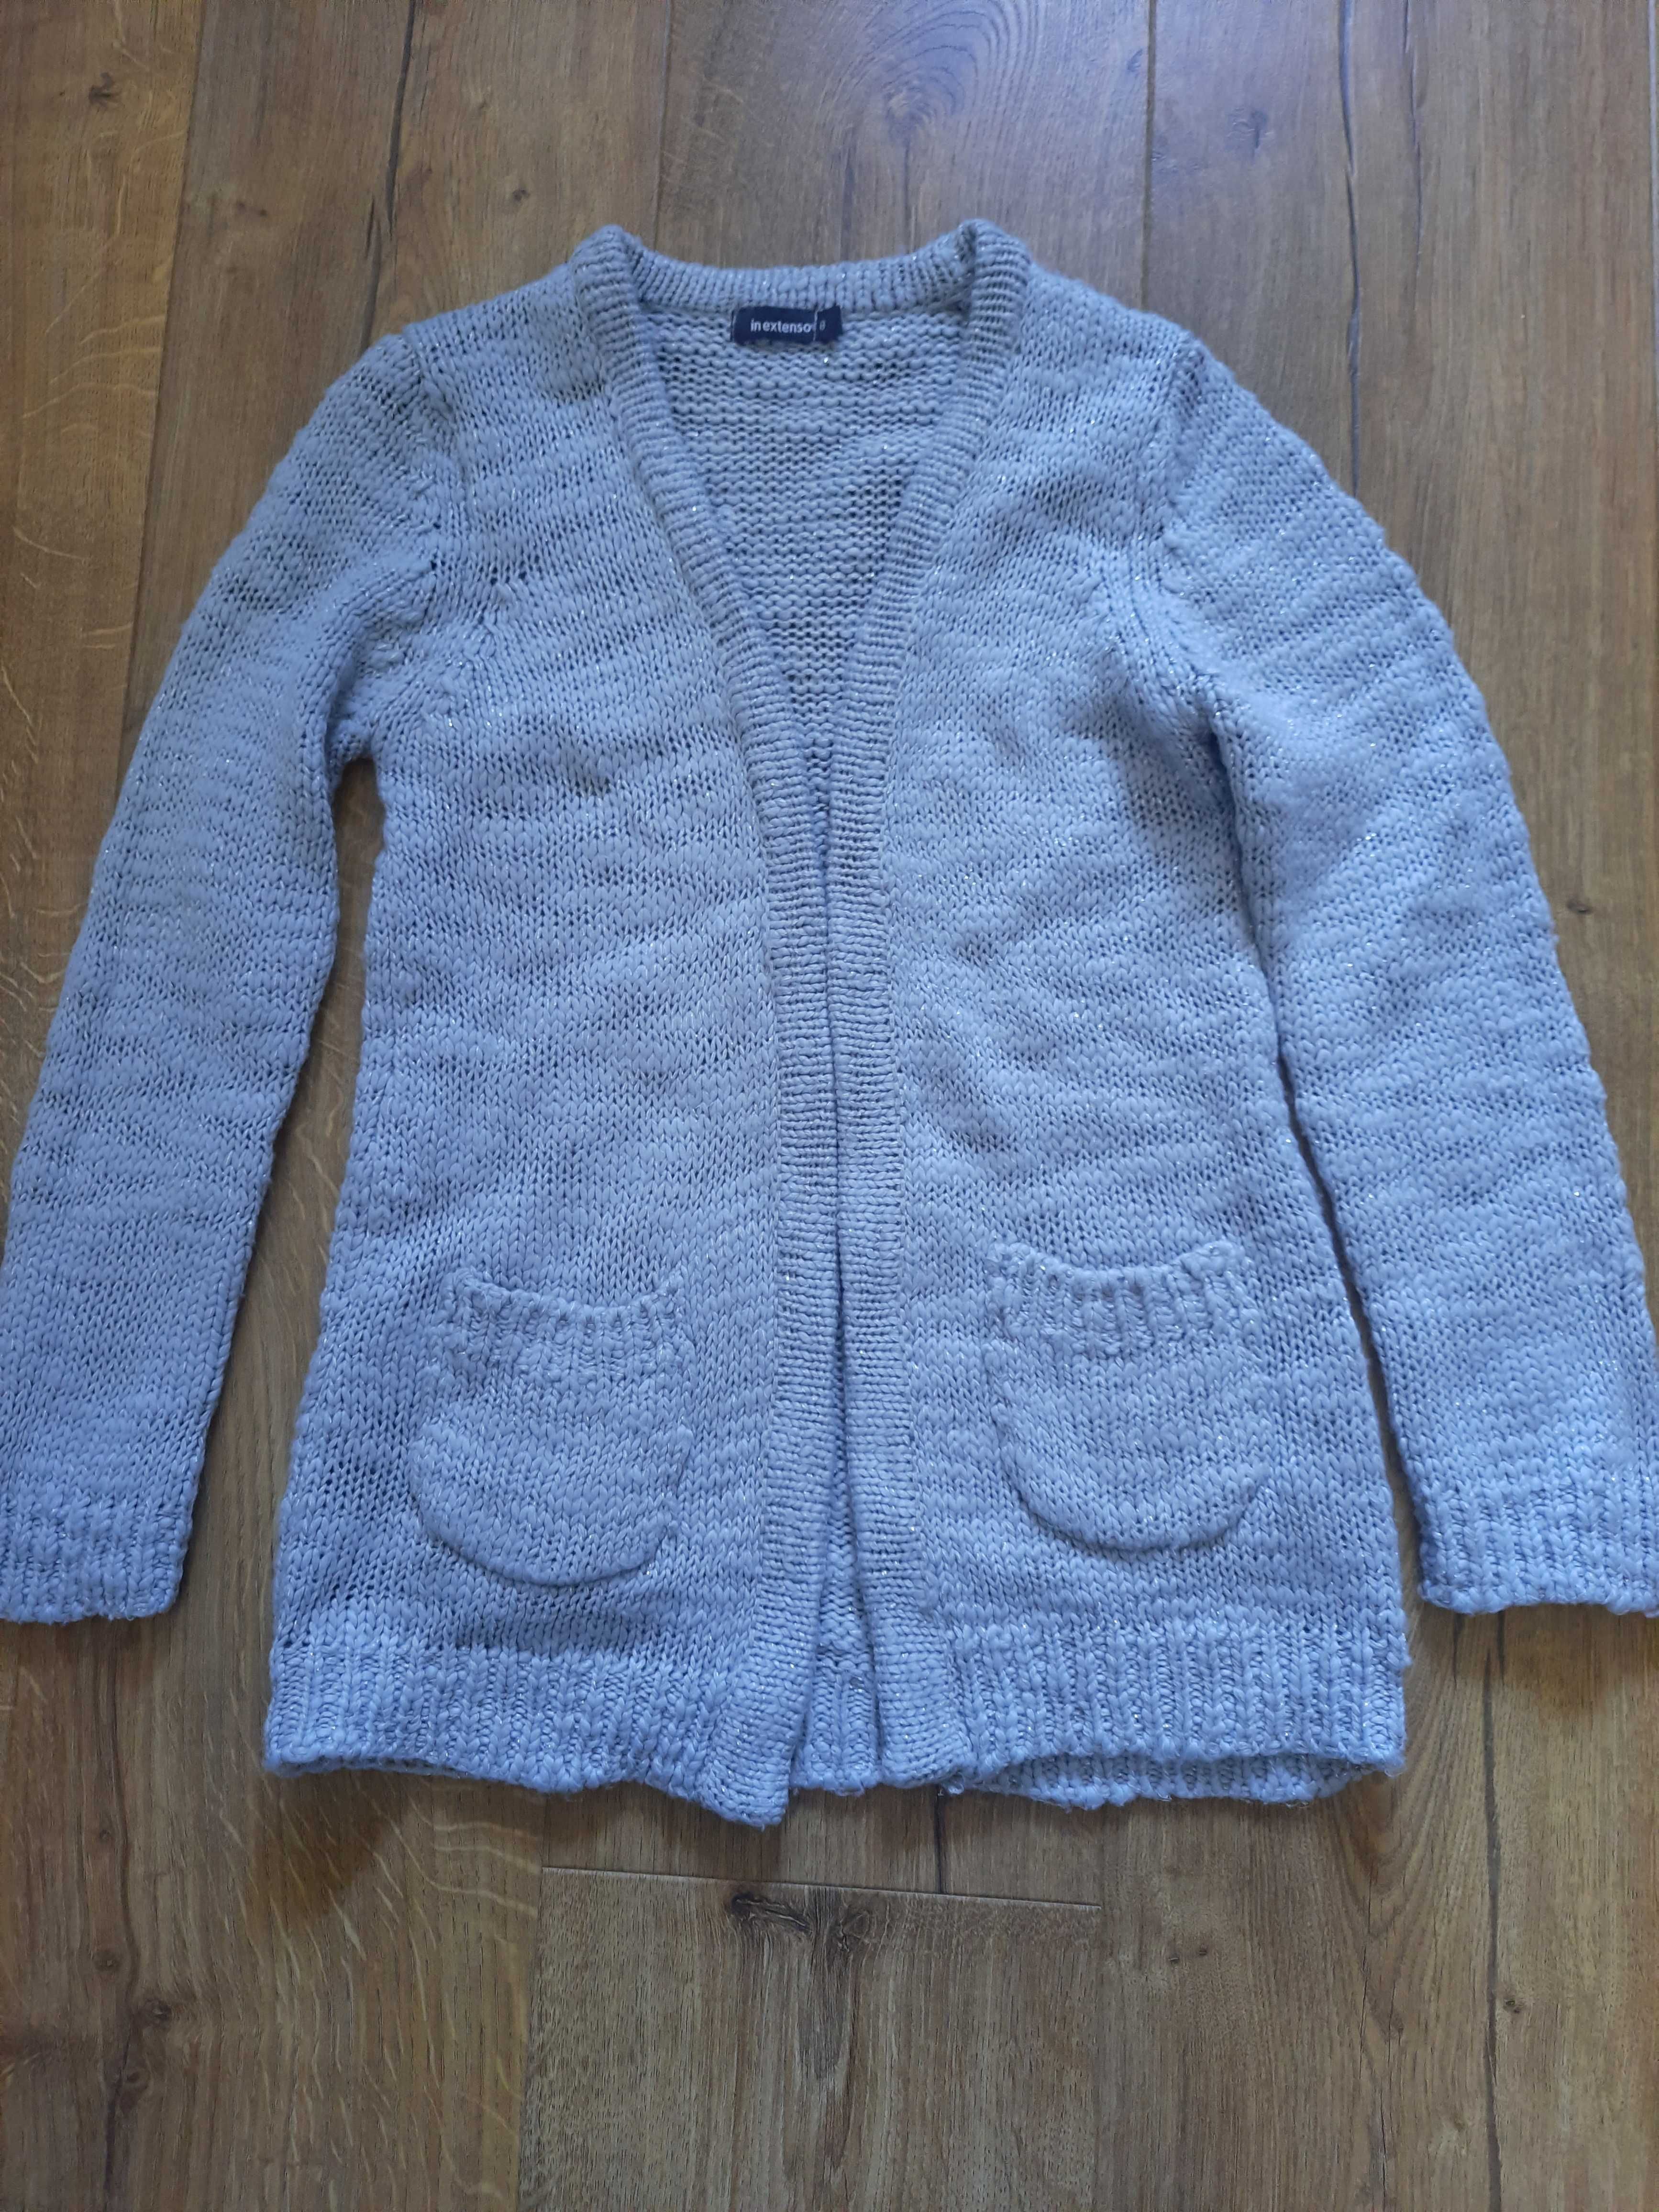 Sweterek dla dziewczynki. Rozmiar 128